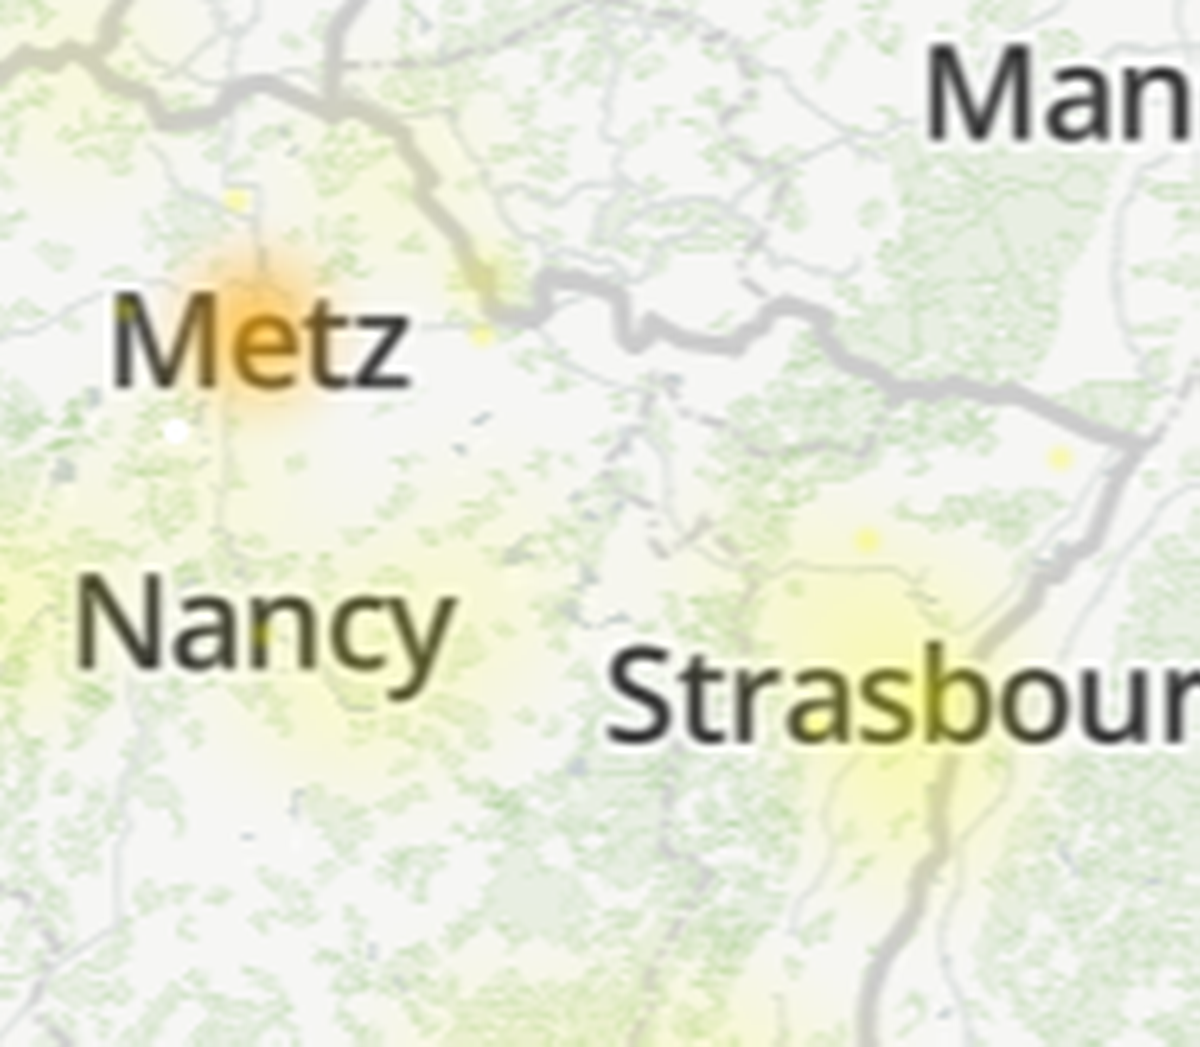 Selon le site Downdetector, des pannes liées à l'opérateur SFR ont été signalées à Metz et Nancy.